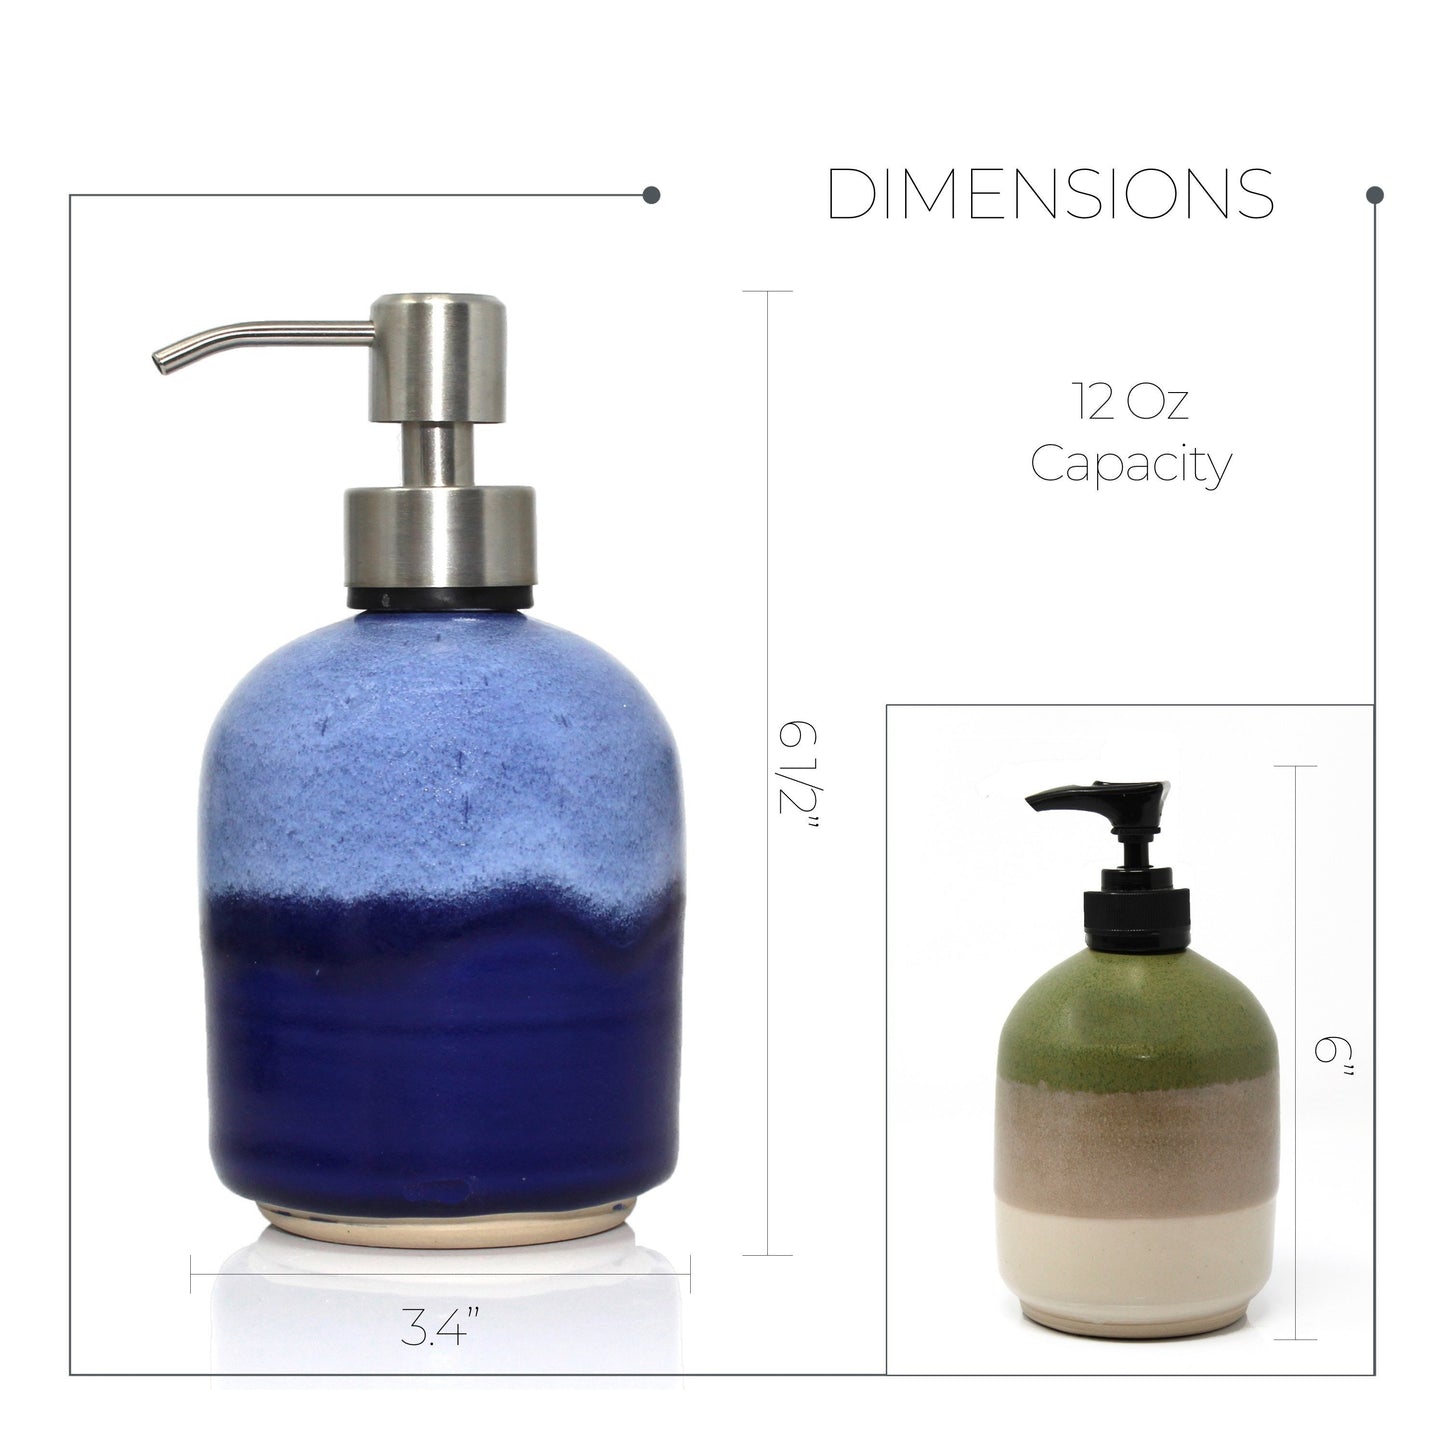 Stoneware Soap Dispenser,  Soap Dispenser With Pump, Handmade Soap Dispenser, Ceramic Soap Dispenser,  Bathroom Decor